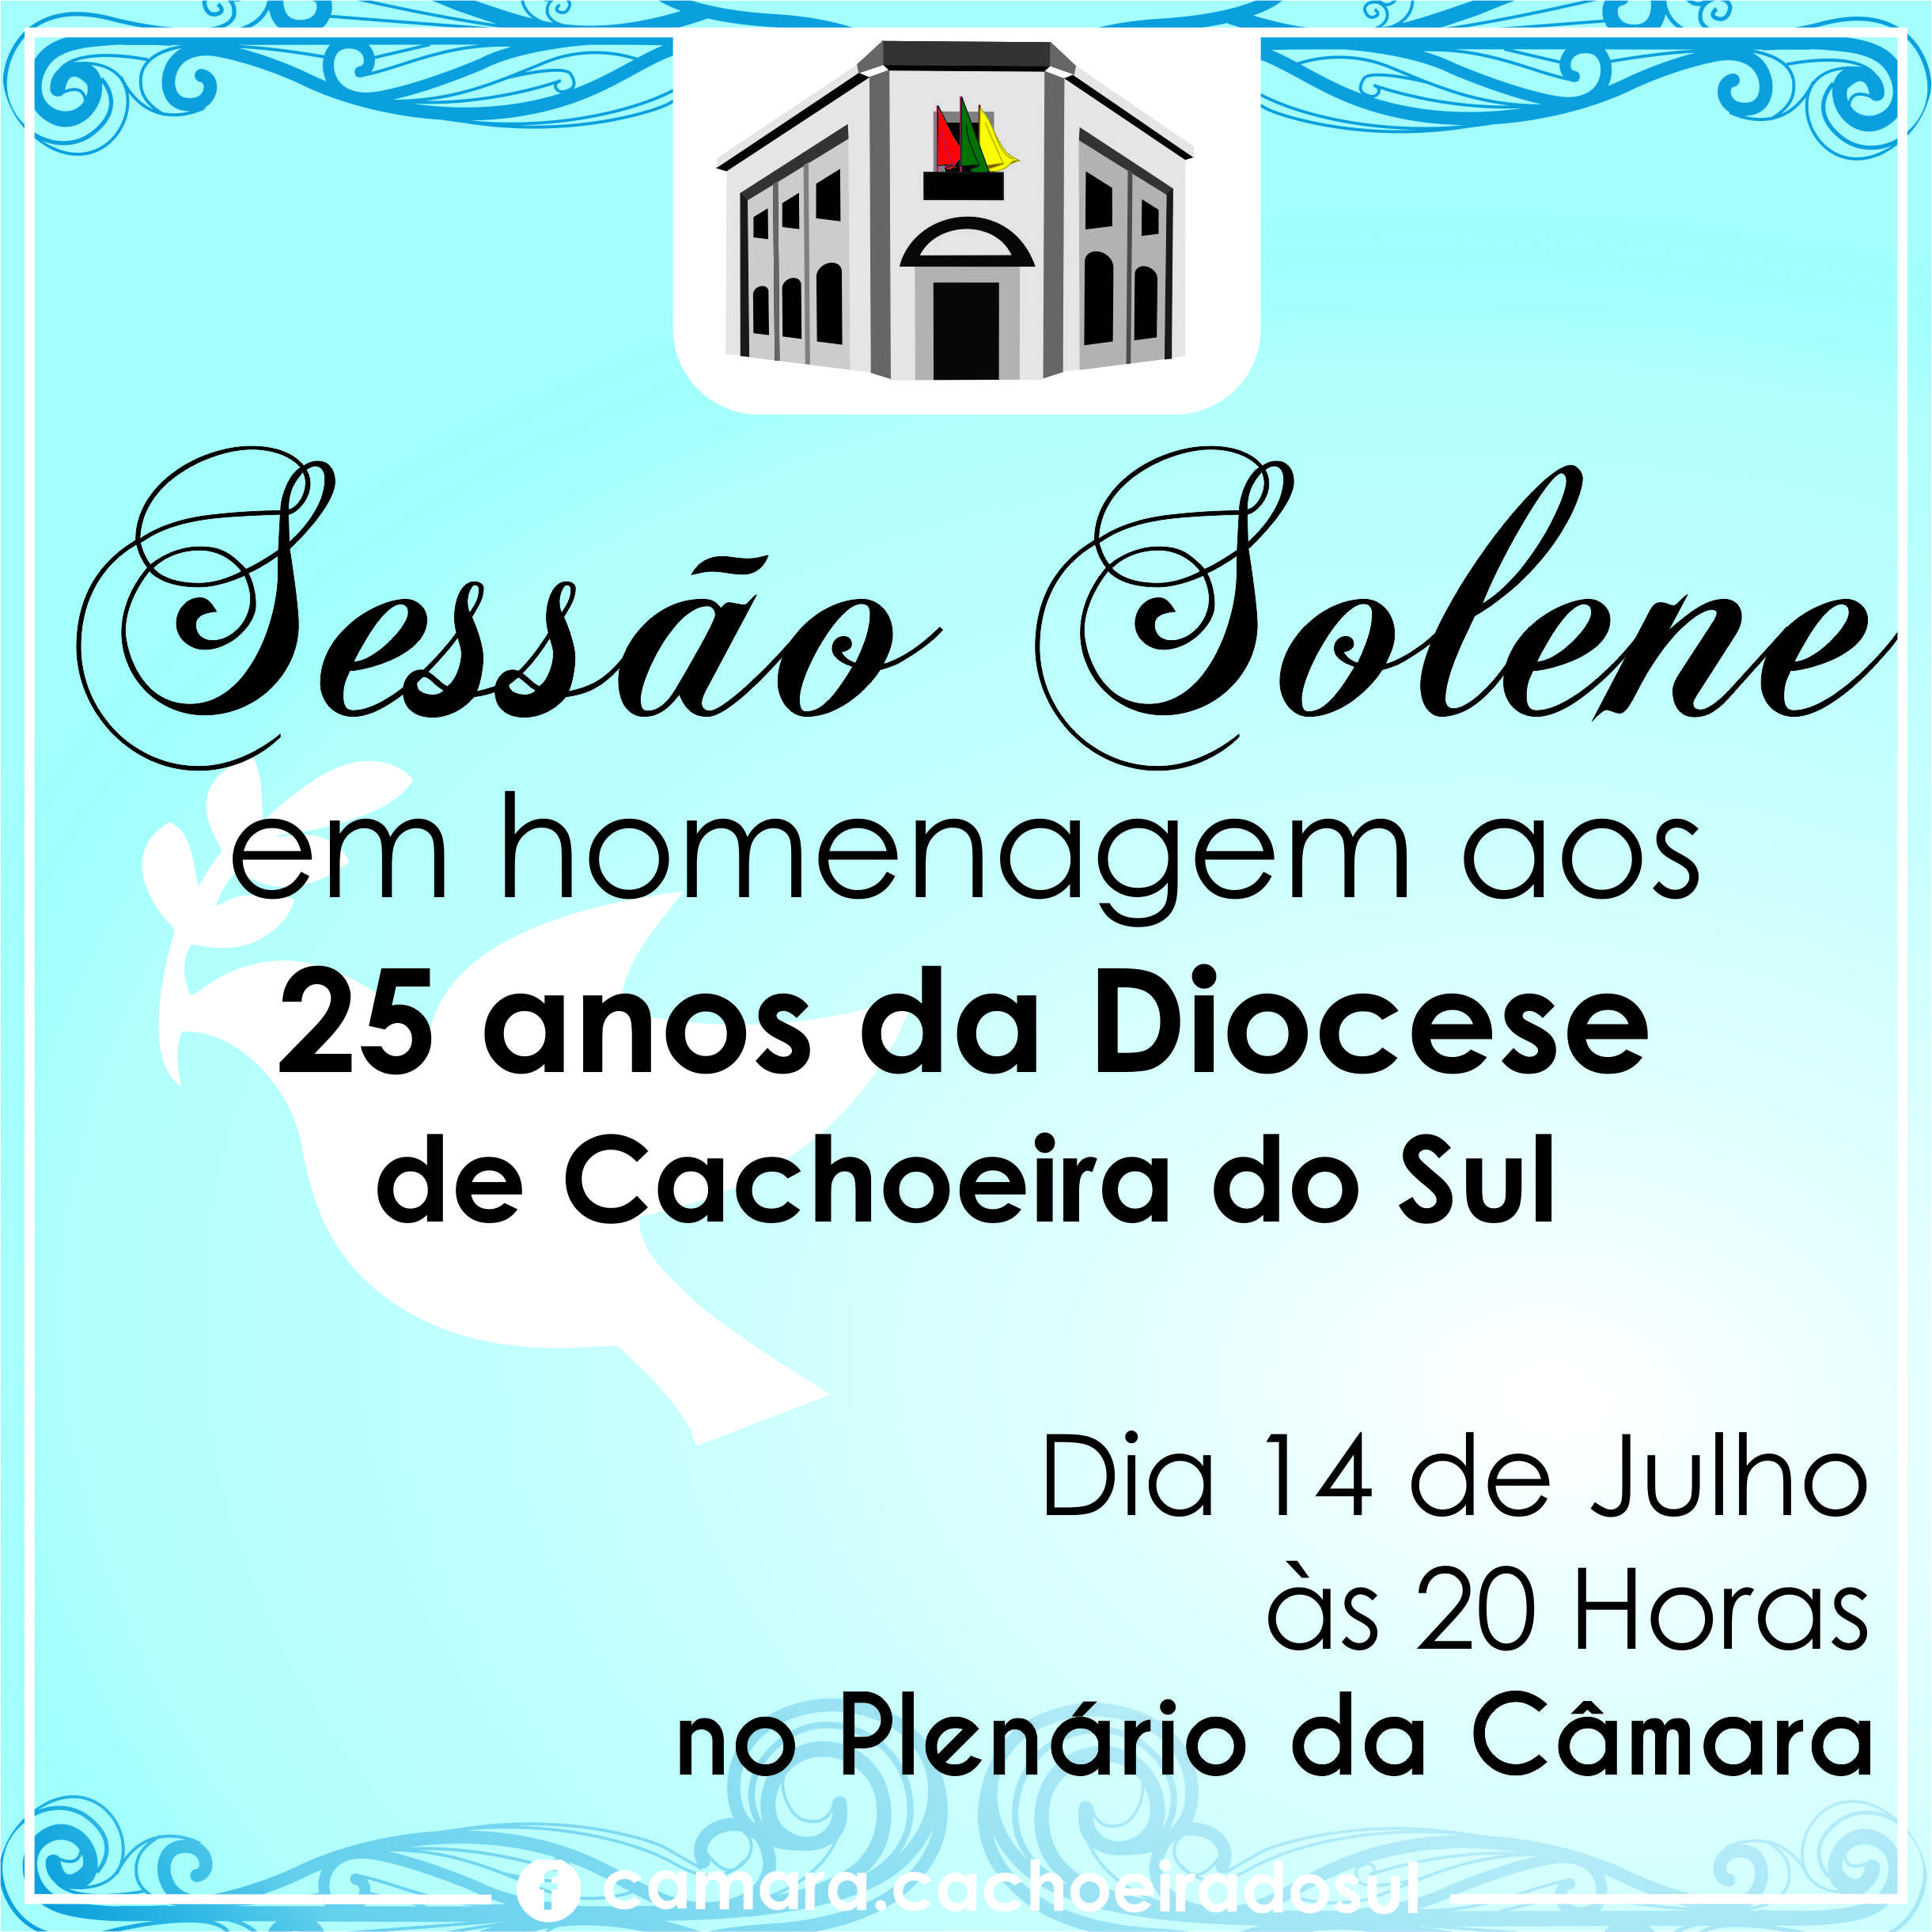 Sessão solene vai homenagear Diocese de Cachoeira do Sul